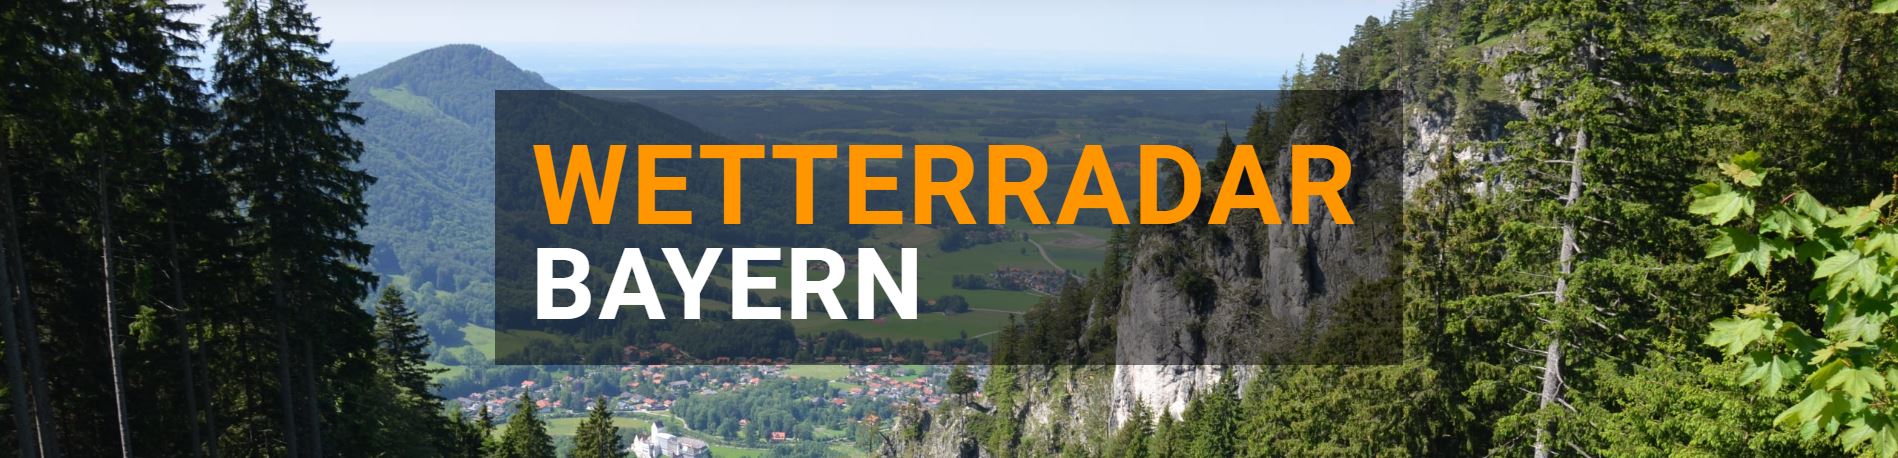 Live Wetterradar Deutschland